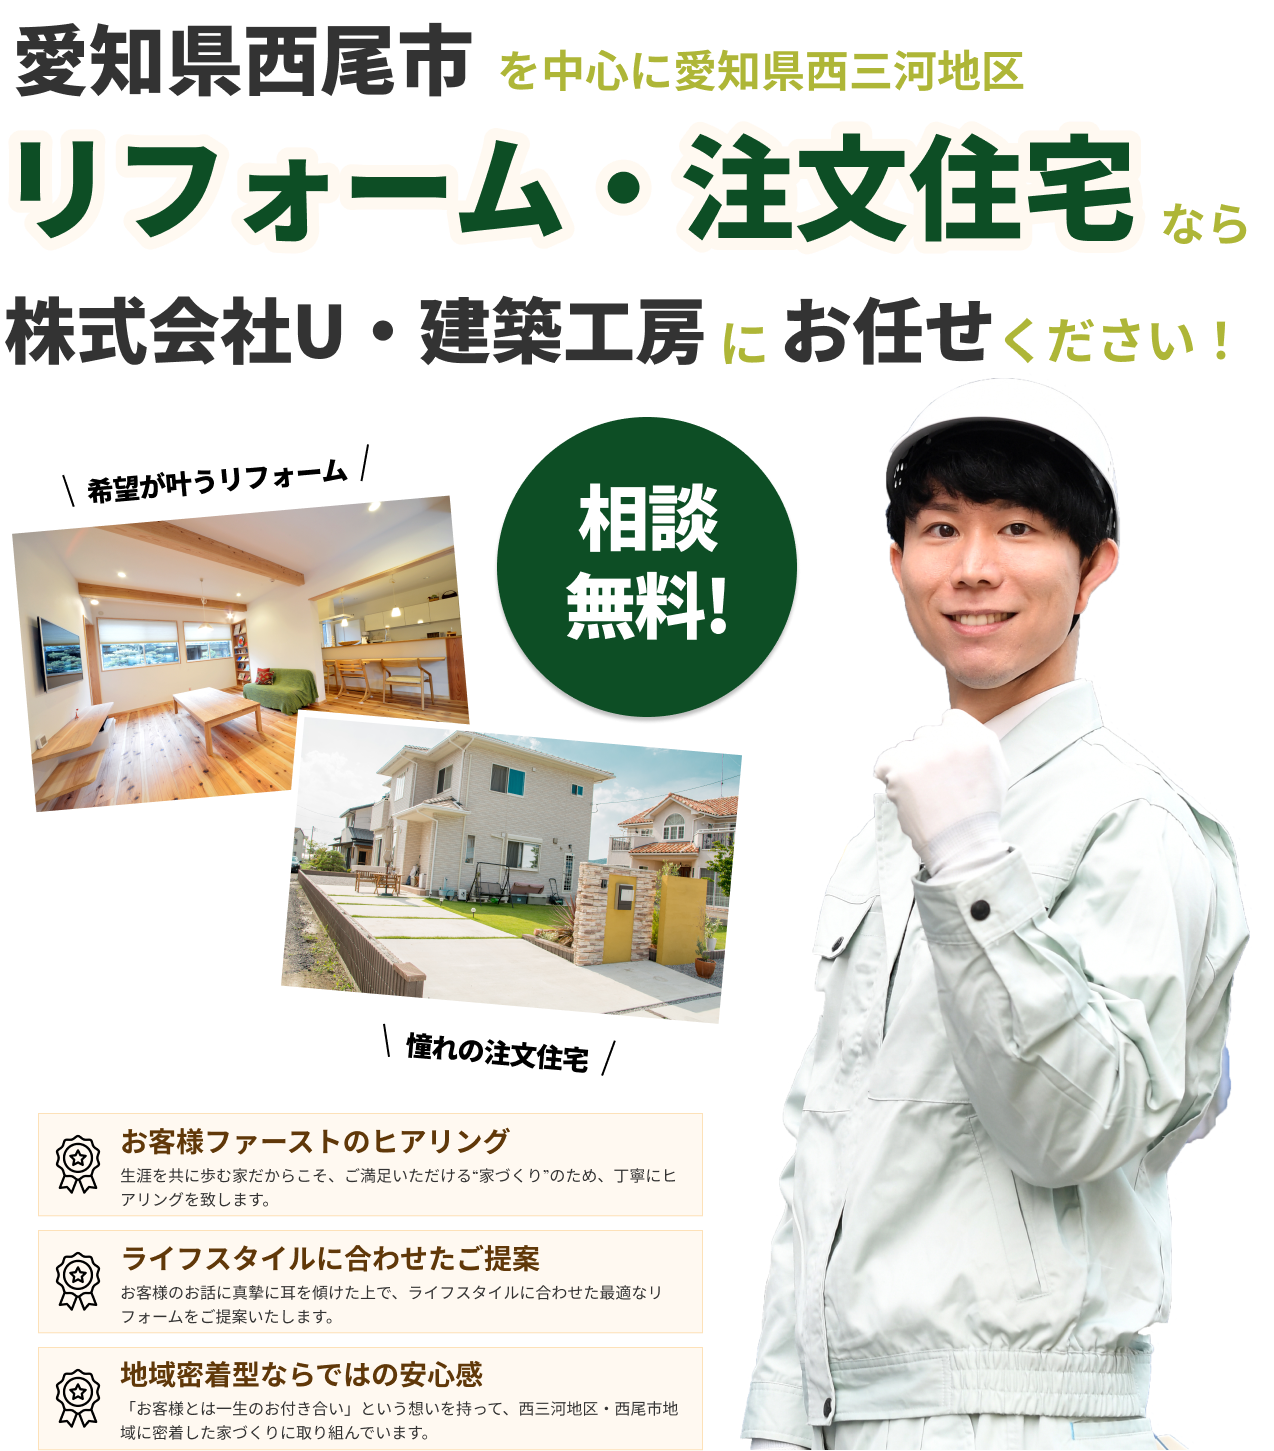 愛知県西尾市・西三河地区でリフォームをお考えなら株式会社U・建築工房まで